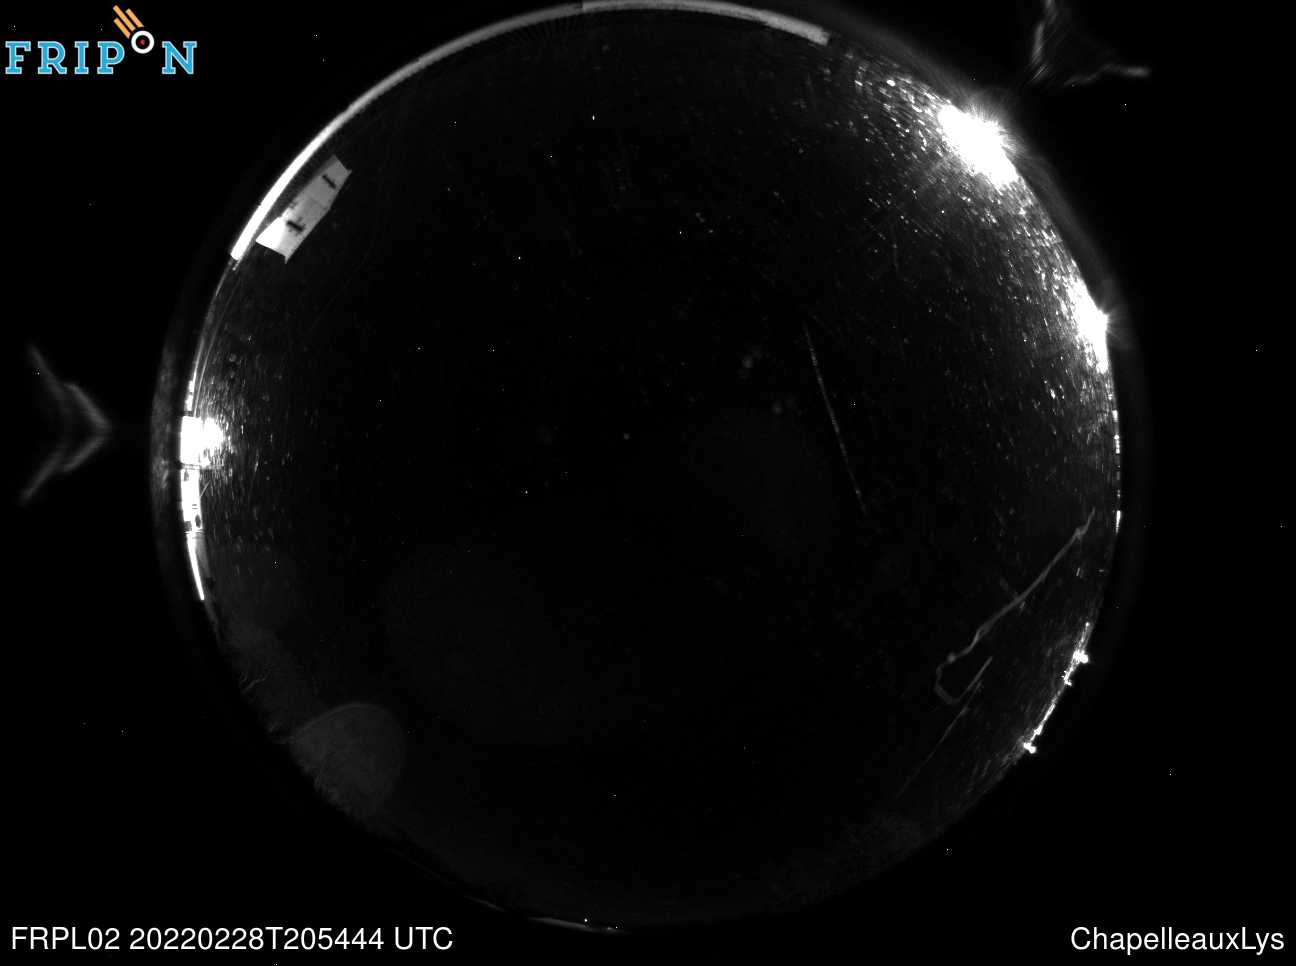 Full size image detection La Chapelle-aux-Lys (FRPL02) Universal Time